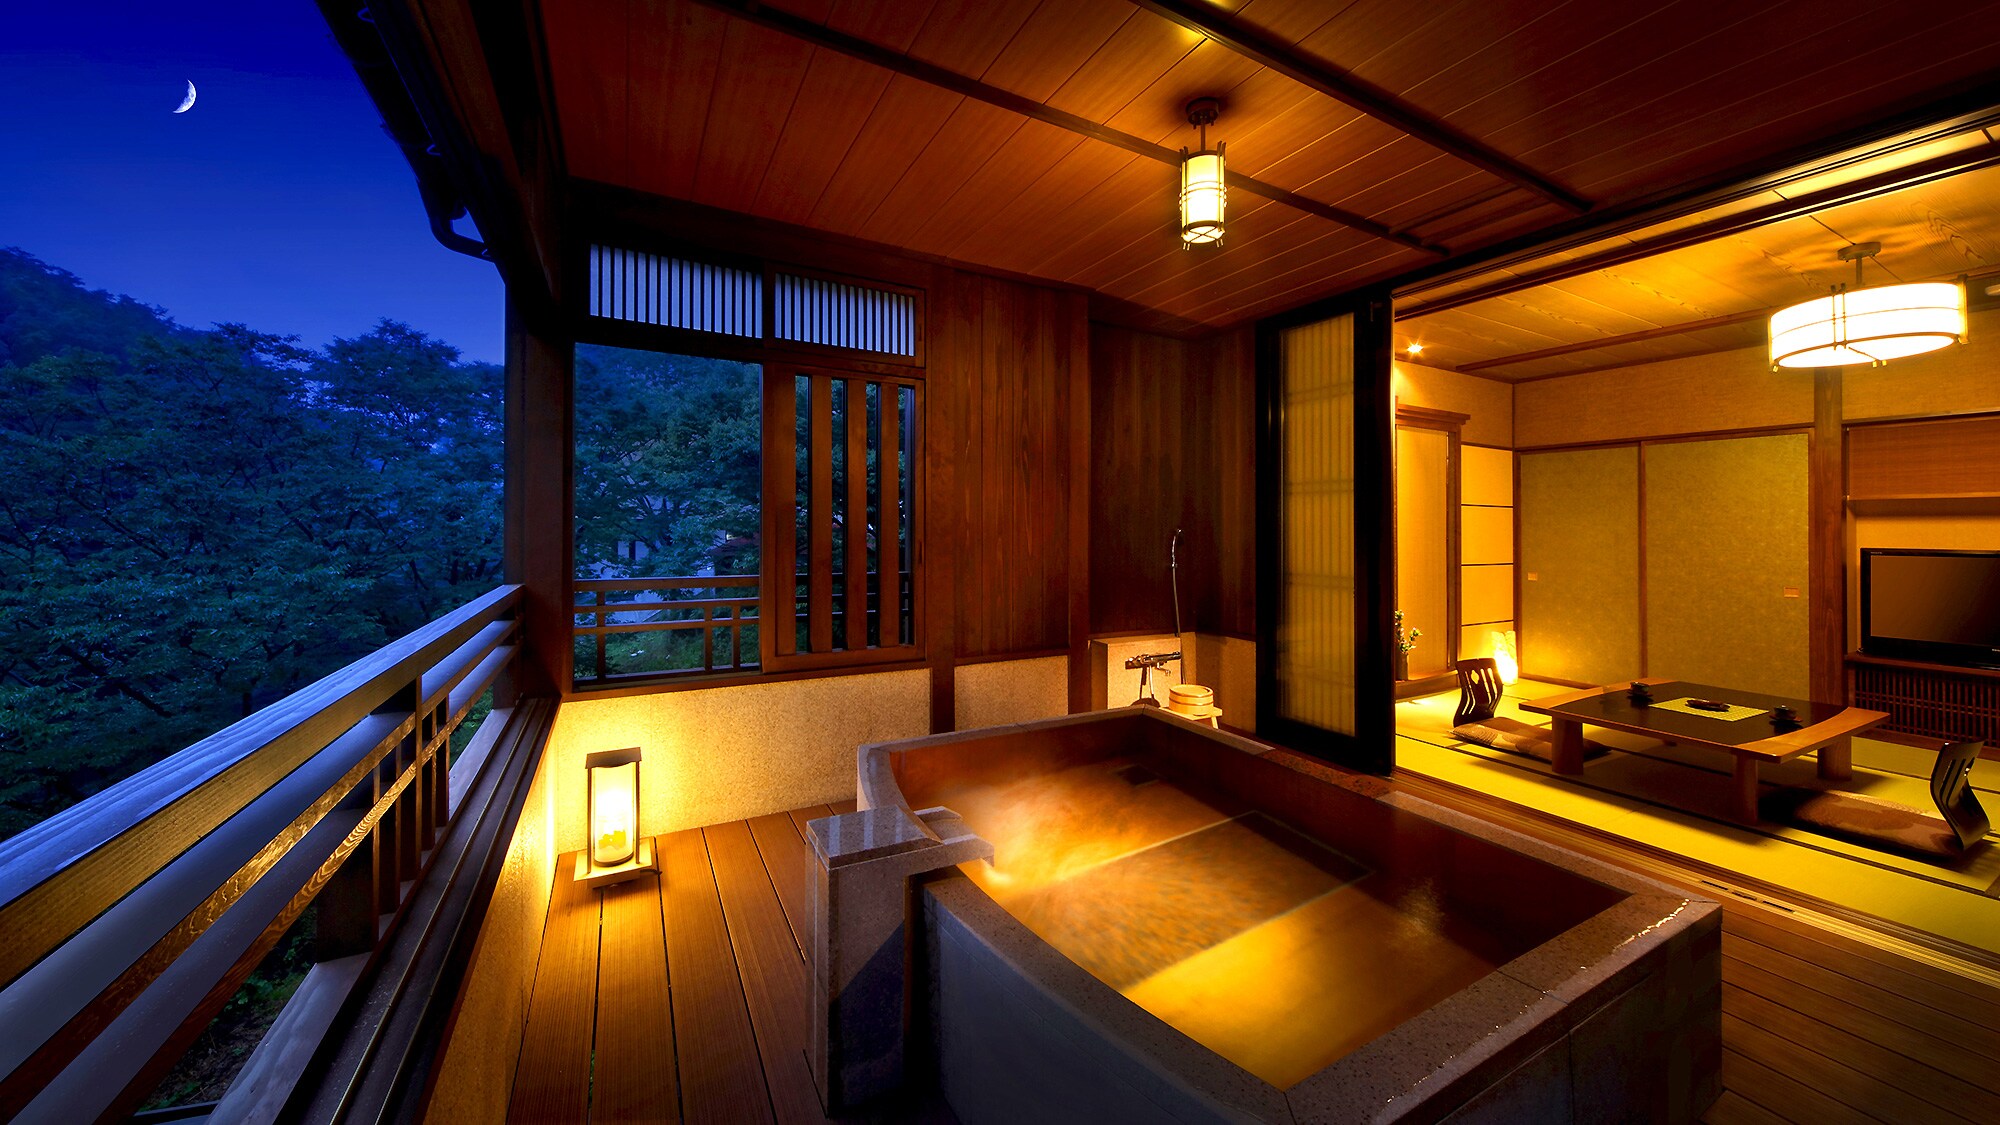 Special room with open-air bath "Kizunasuito"